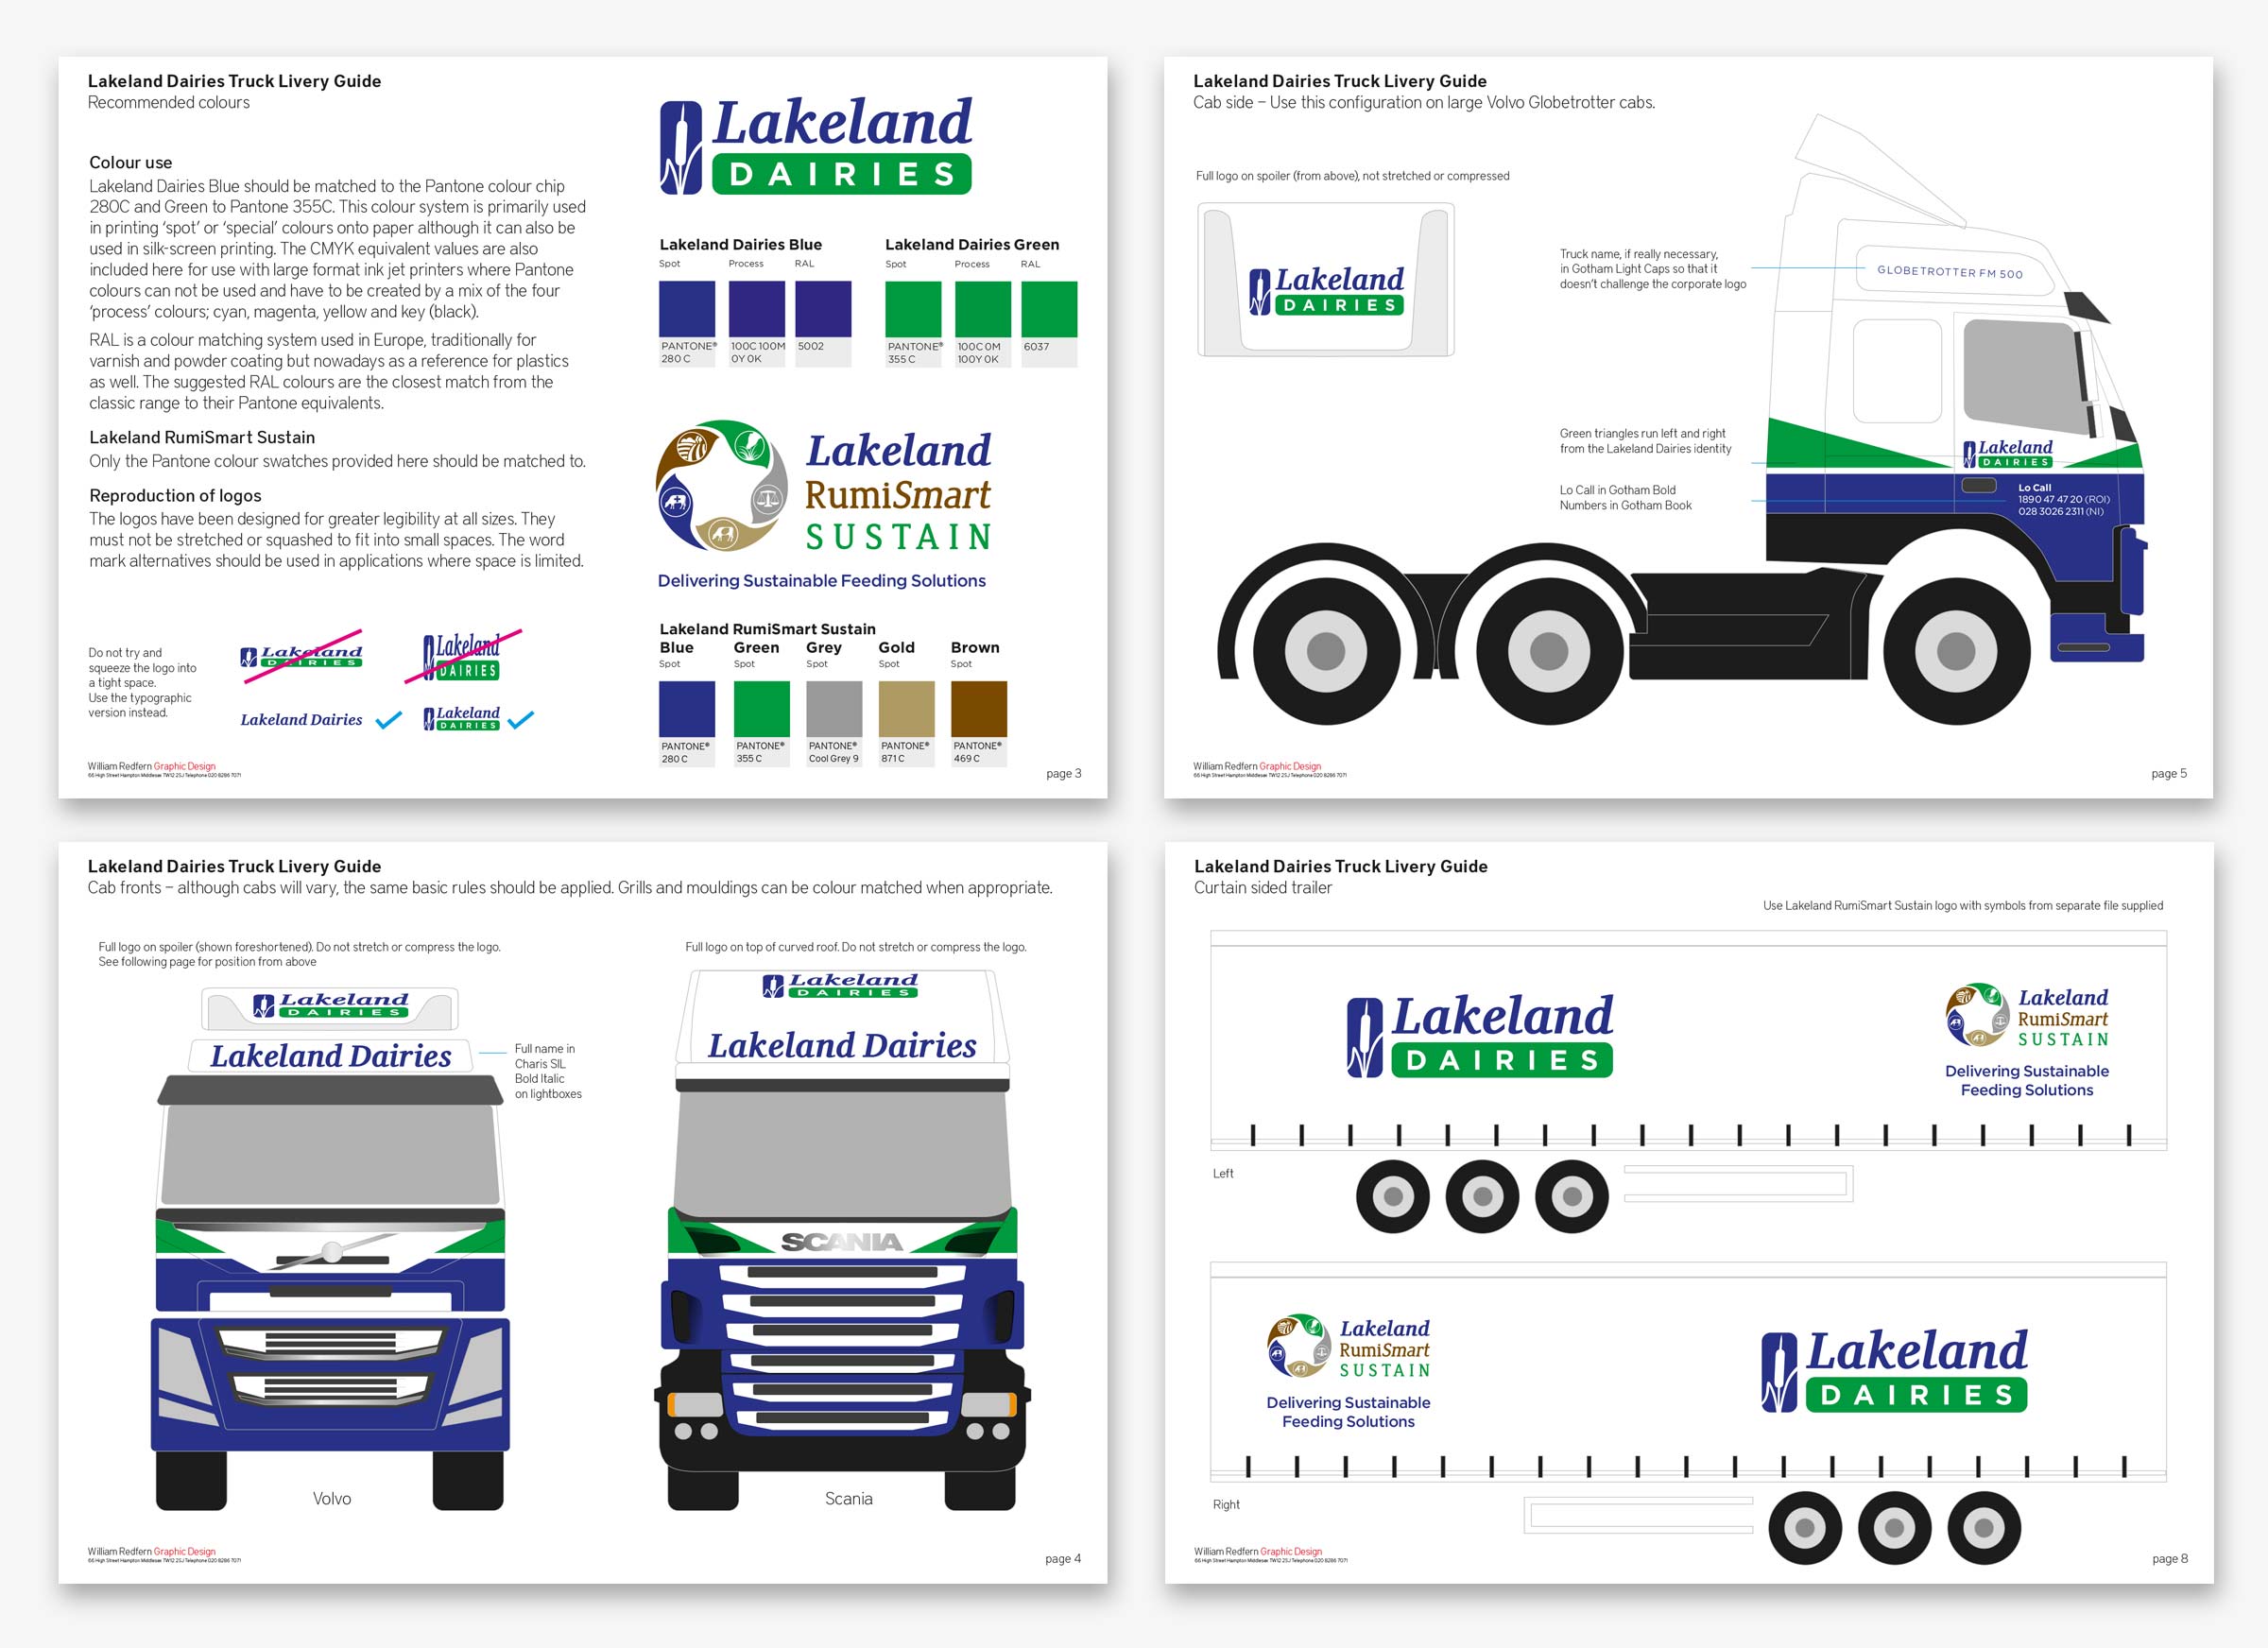 Lakeland Dairies vehicle brand guidelines